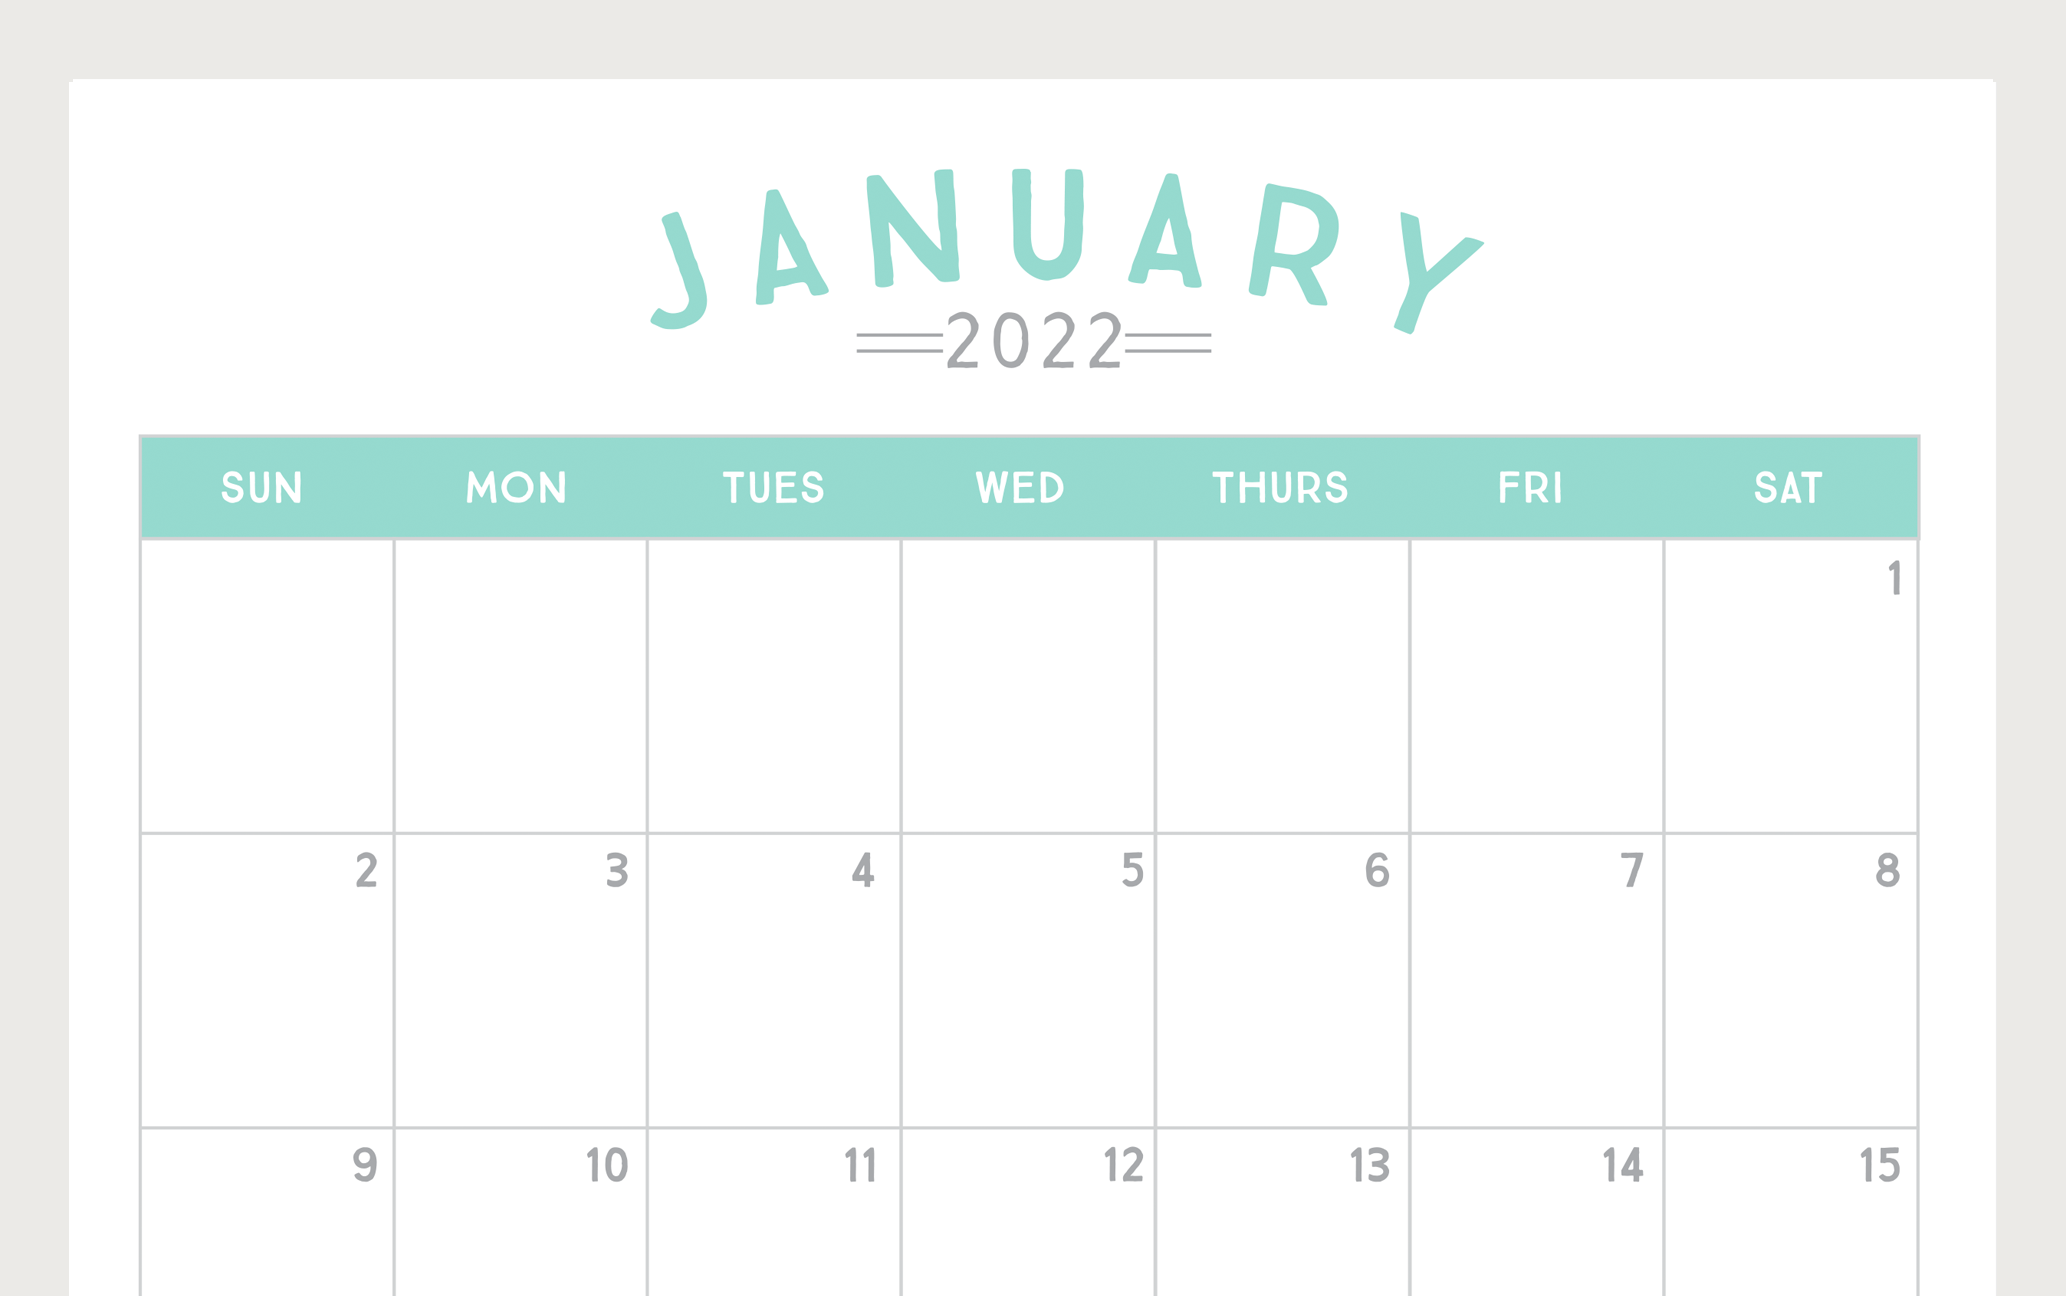 Print 2022 Calendar By Month Free Printable 2022 Calendar